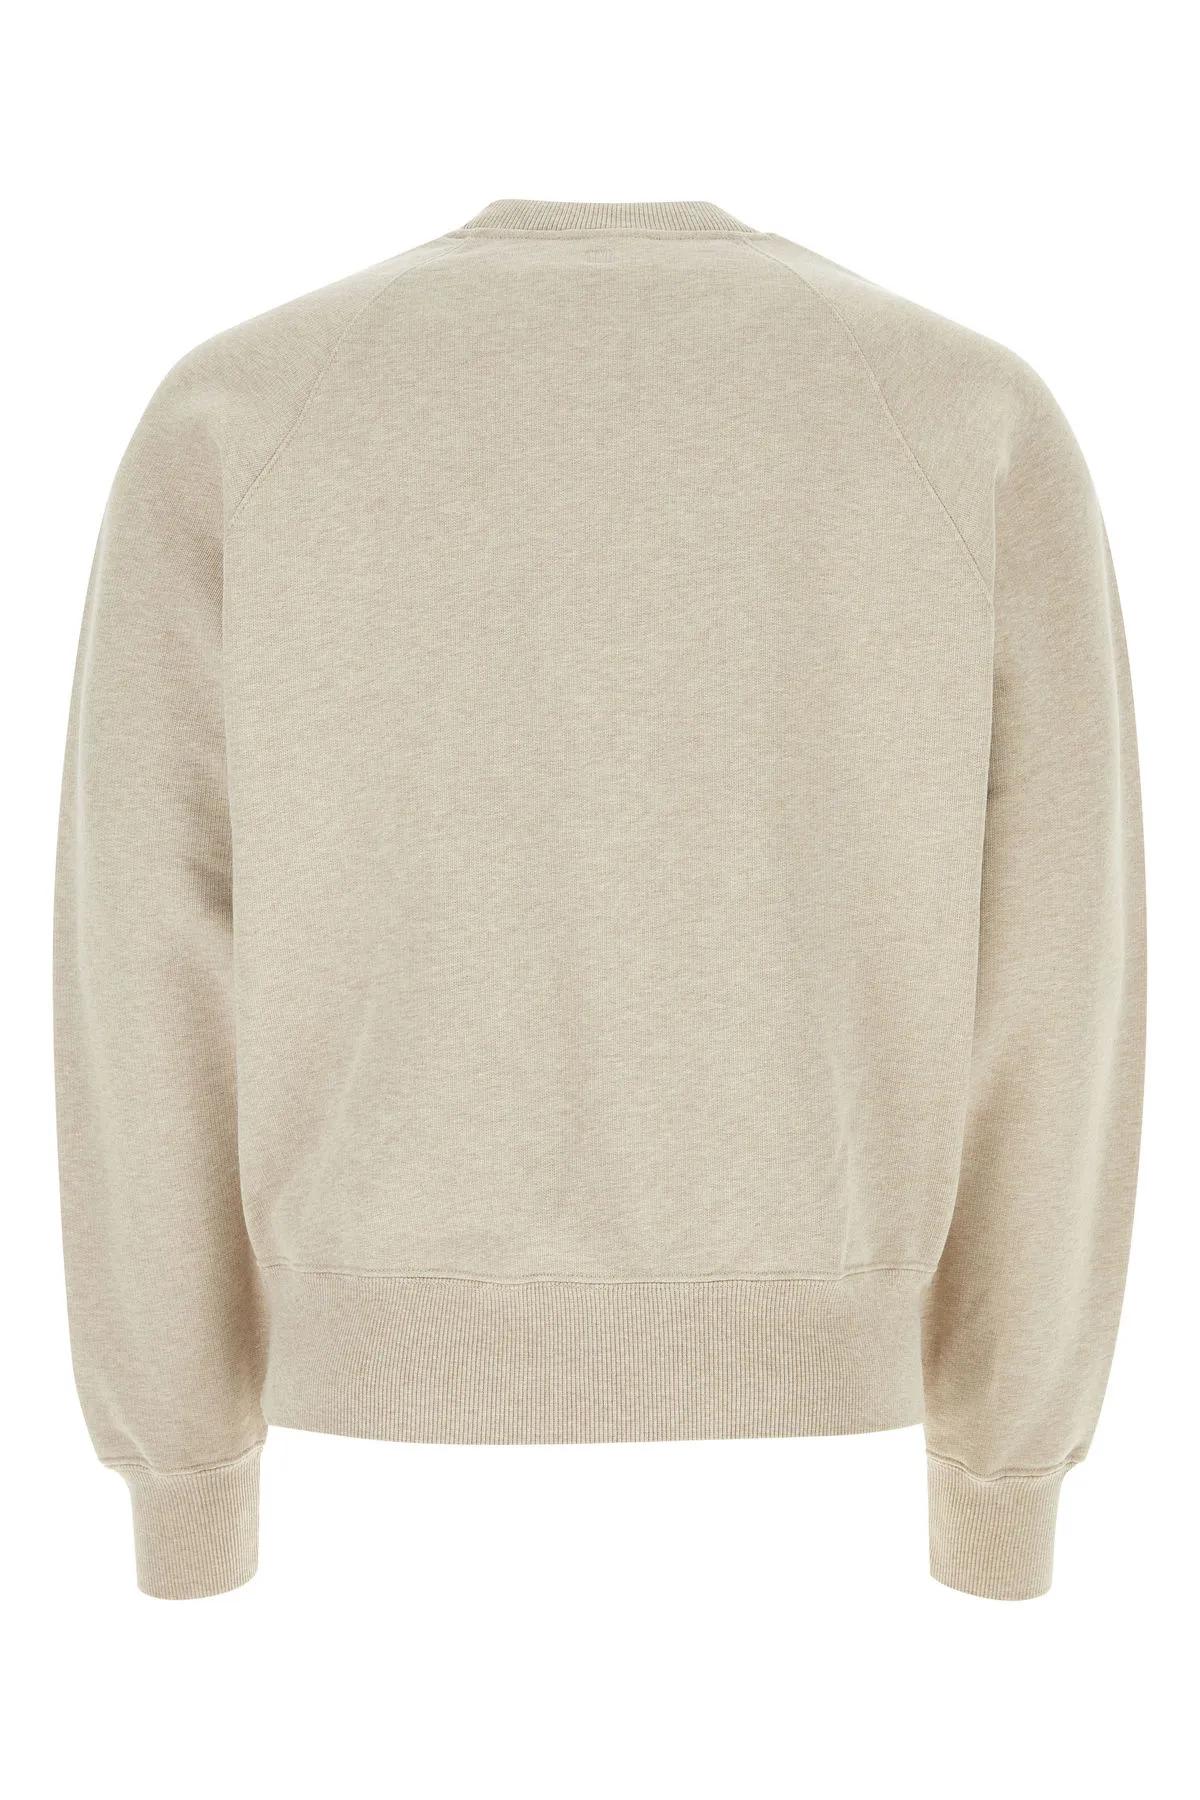 Shop Ami Alexandre Mattiussi Sand Cotton Sweatshirt In Neutrals